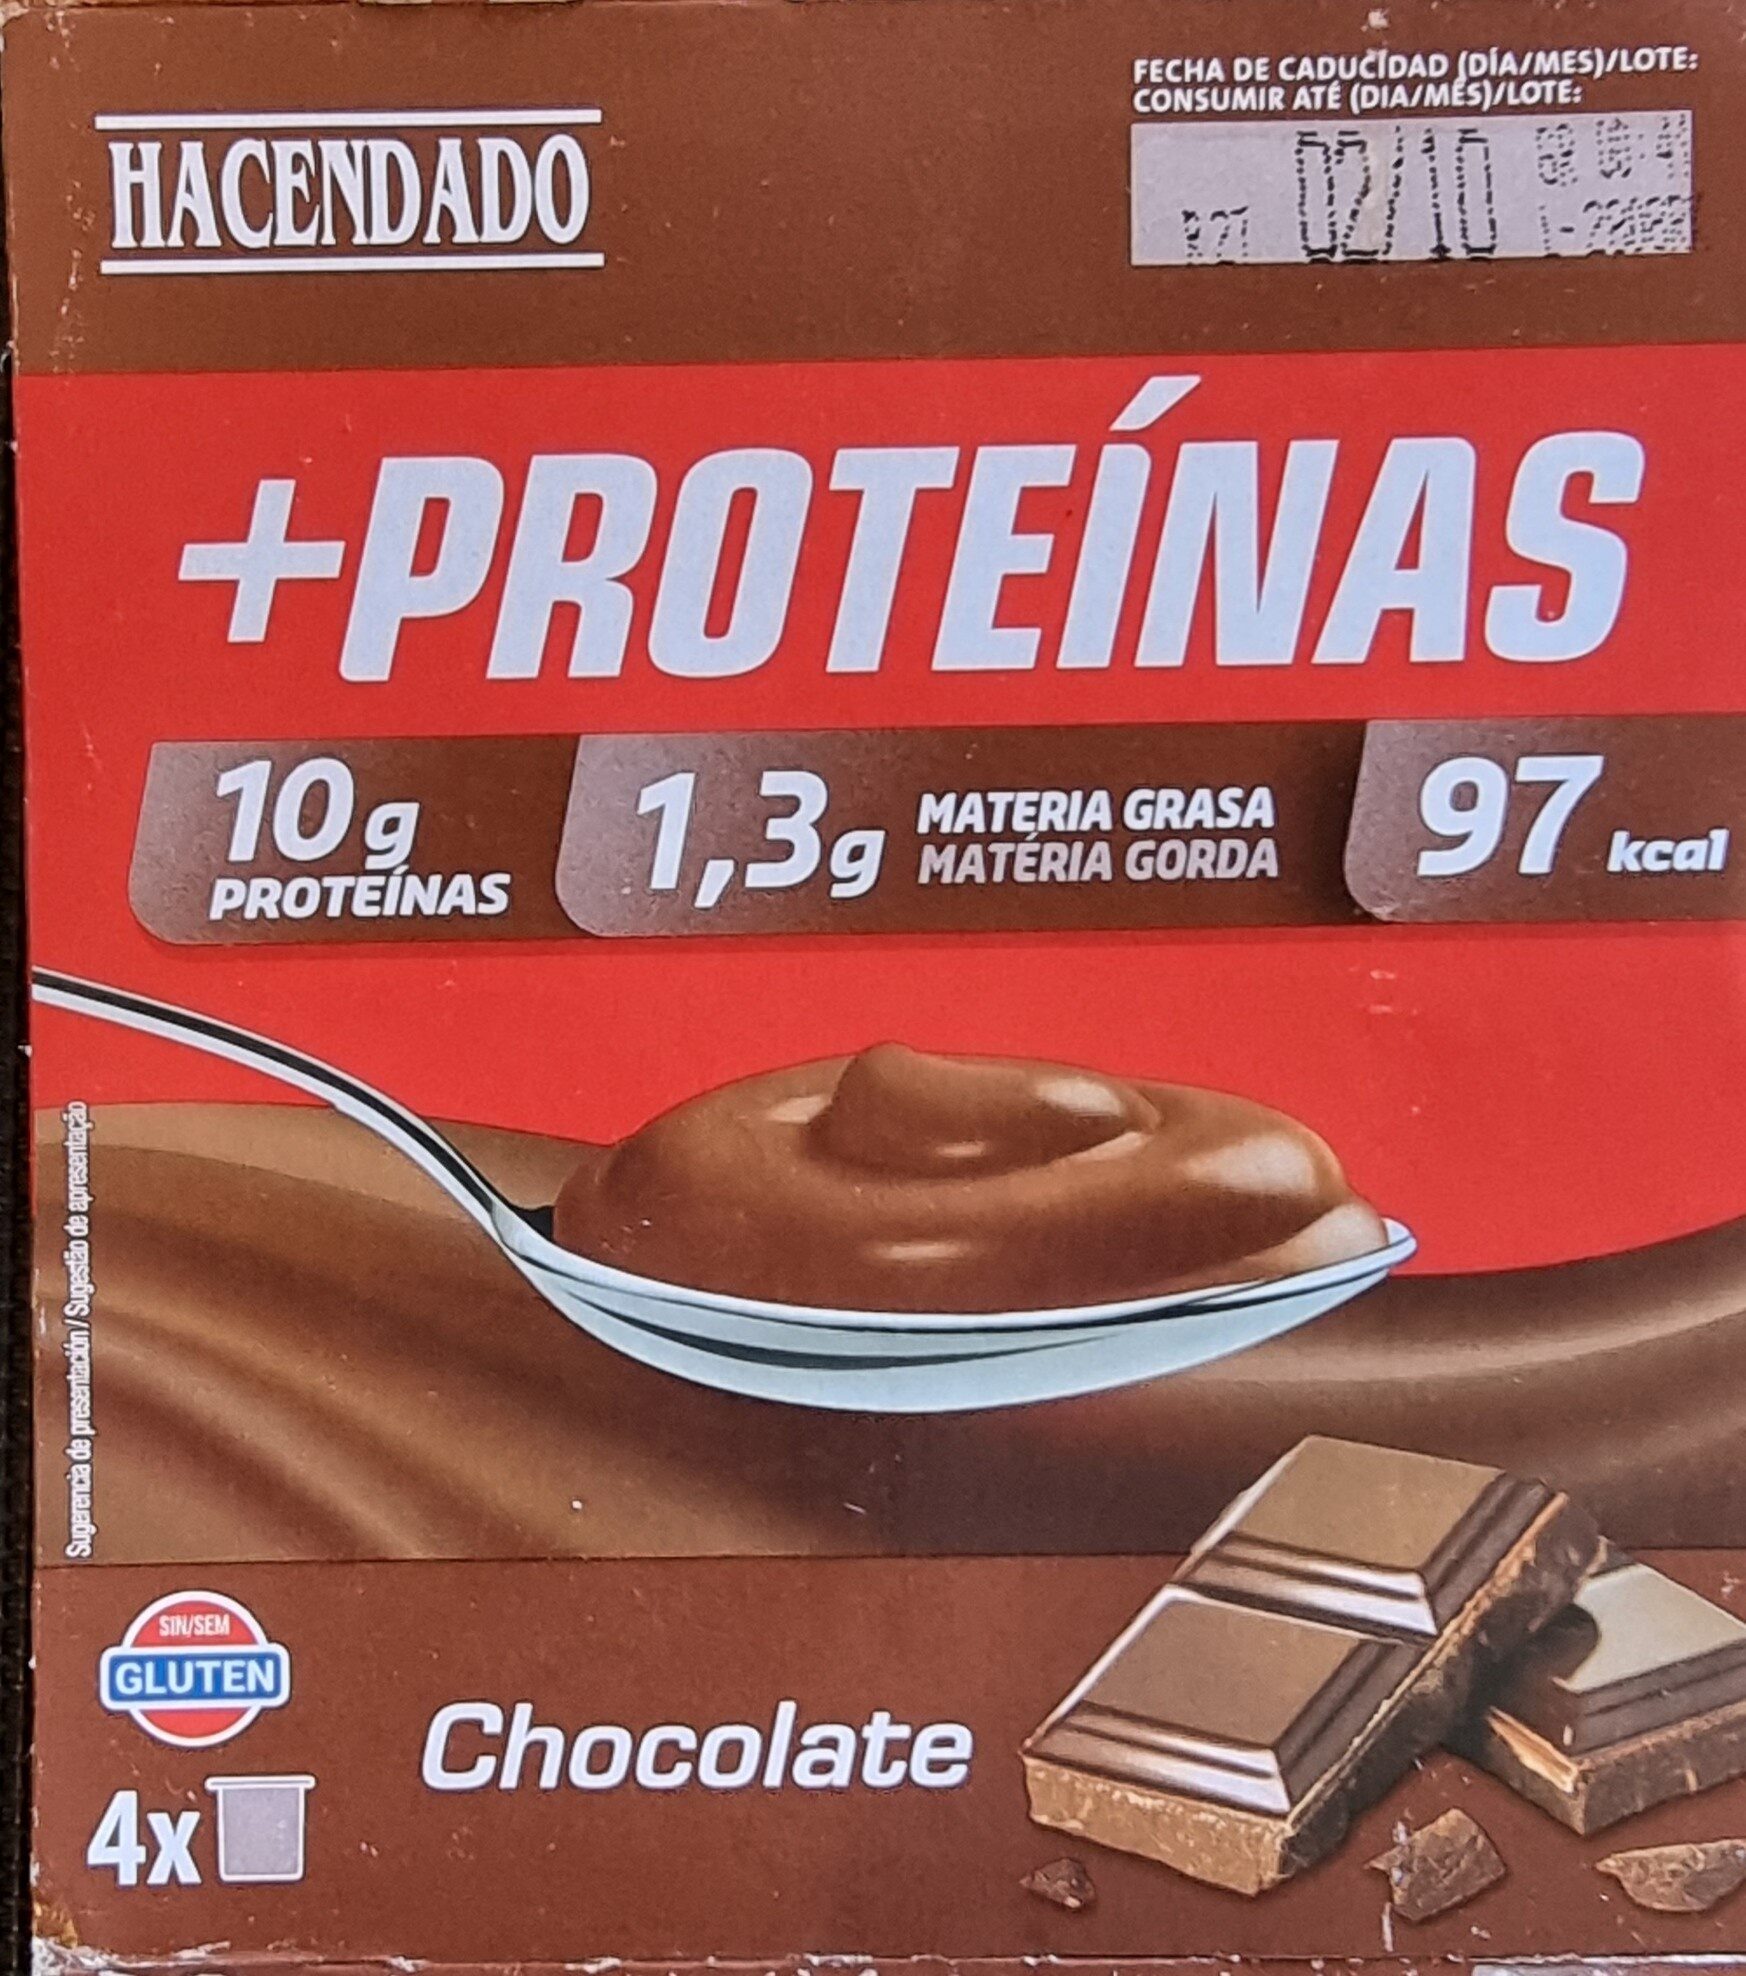 Postre lácteo +Proteínas chocolate 1,3 g m.g 10 g proteínas - Produto